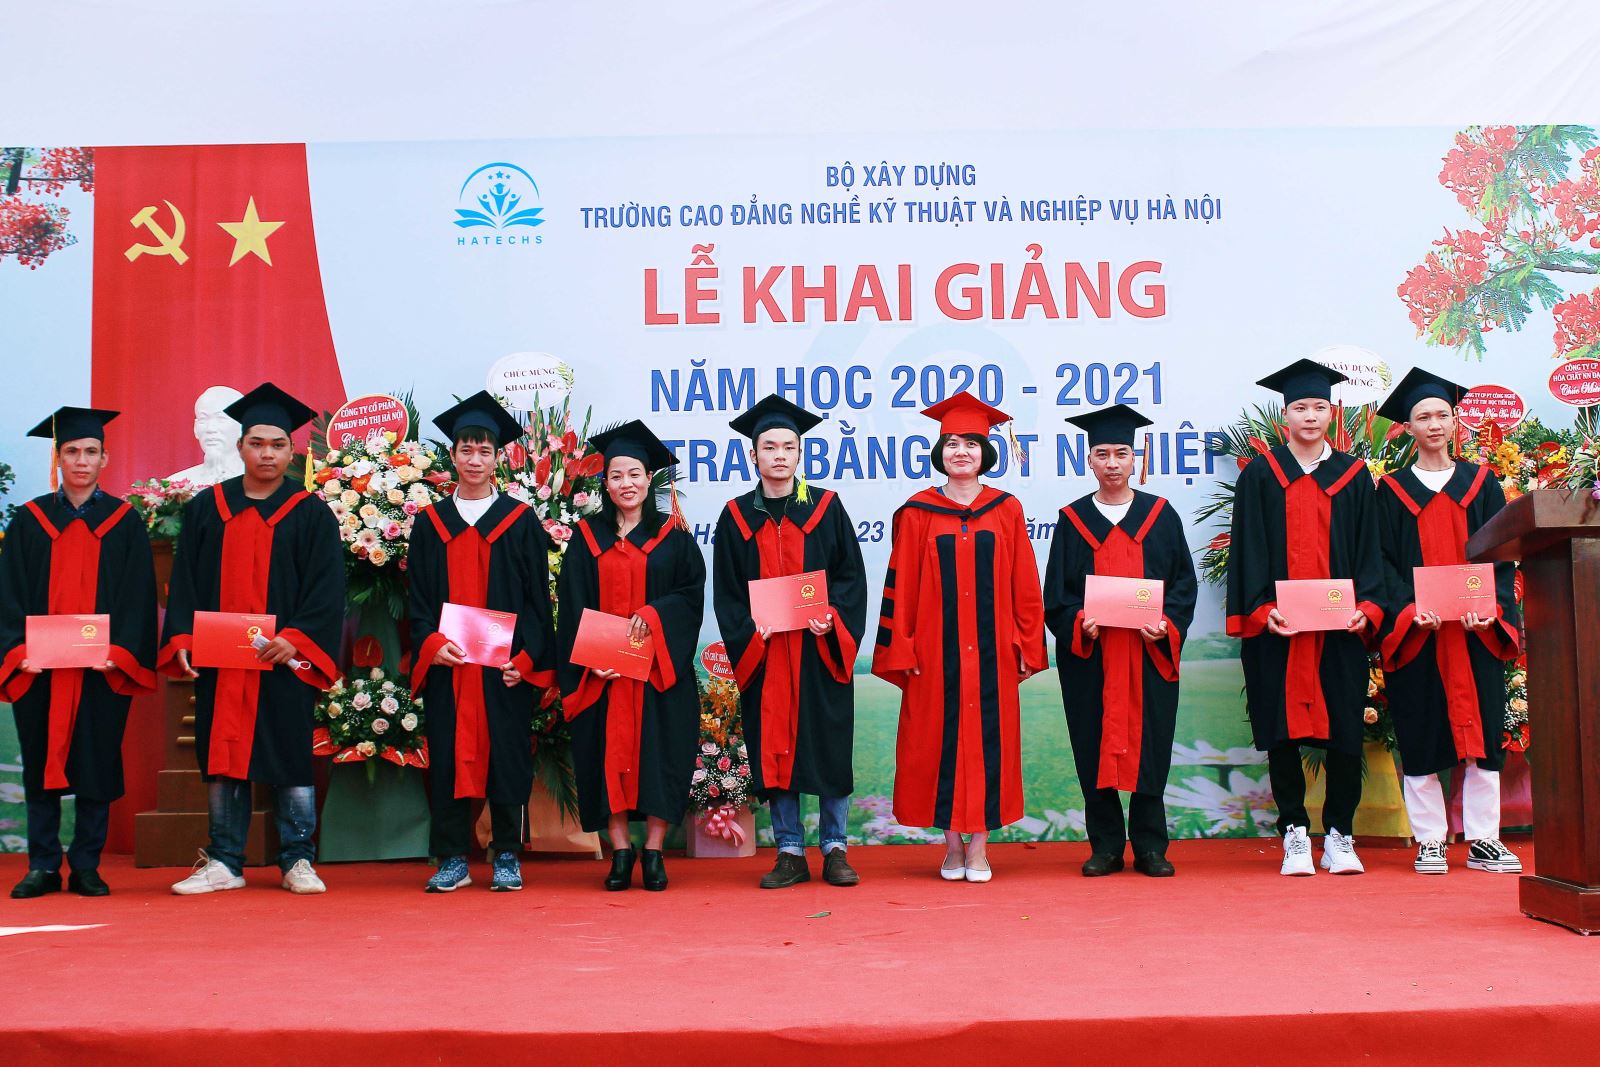 Phó Vụ trưởng Vụ Tổ chức cán bộ (Bộ Xây dựng) Nguyễn Thị Thanh Hằng trao Bằng tốt nghiệp cho các em học sinh, sinh viên mới ra trường